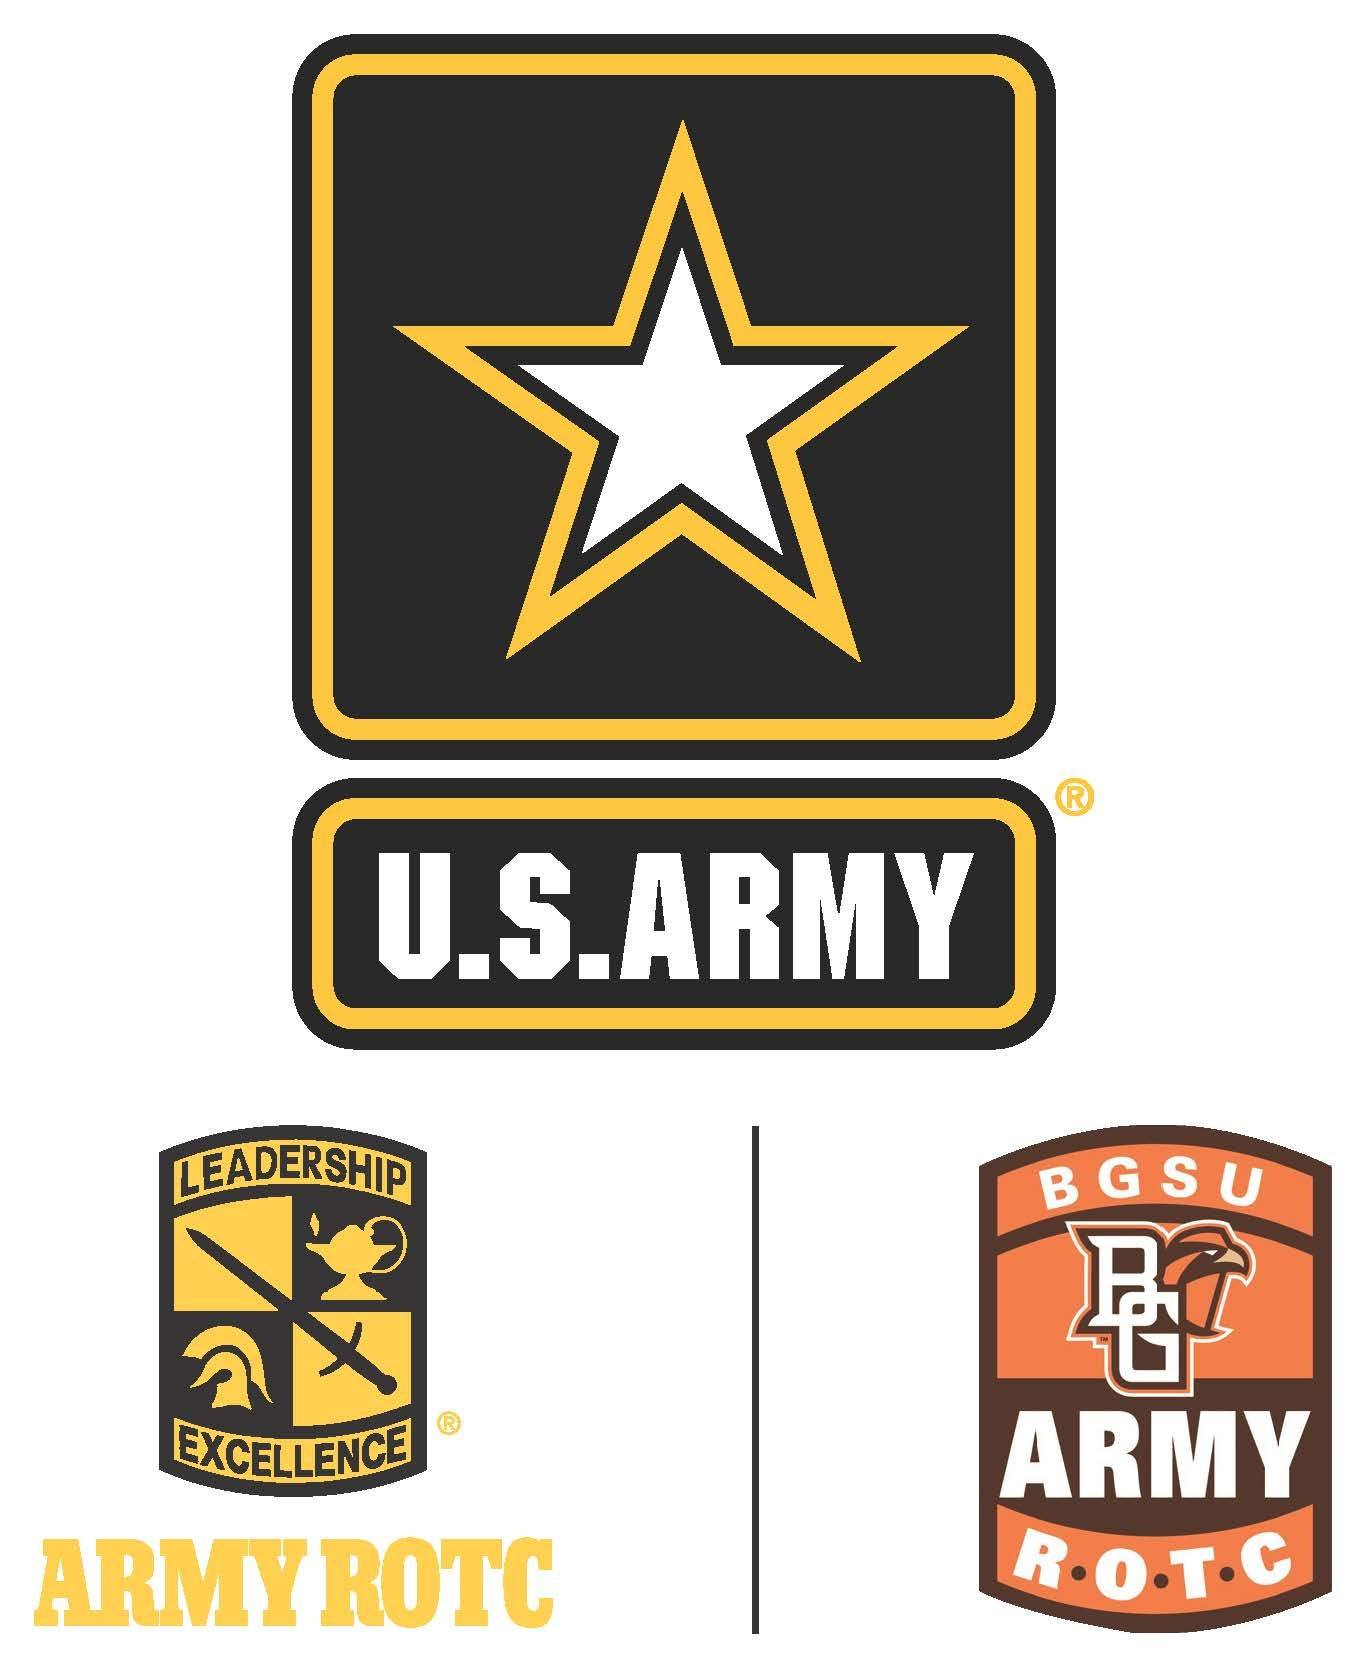 Army-ROTC-Sponsor